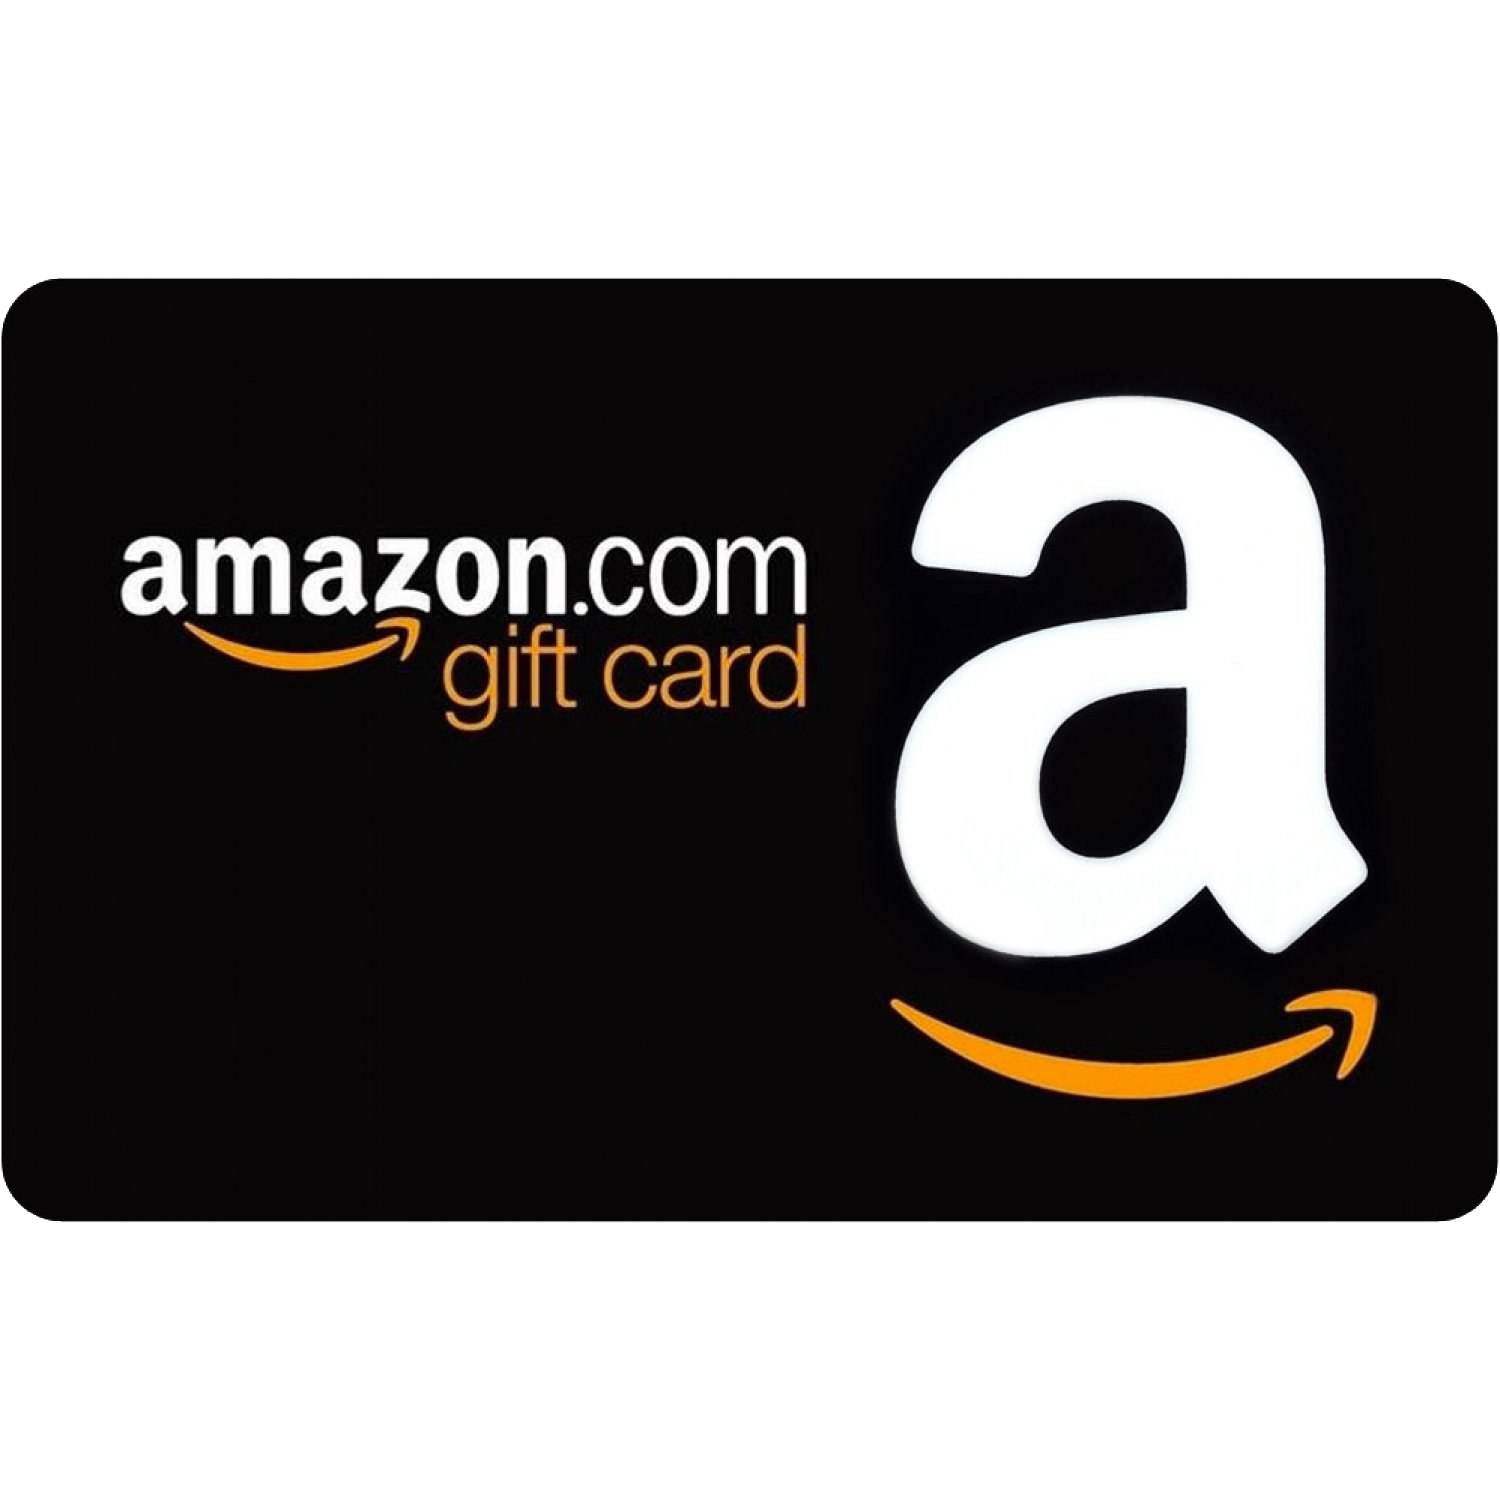 $100 Amazon Gift Card